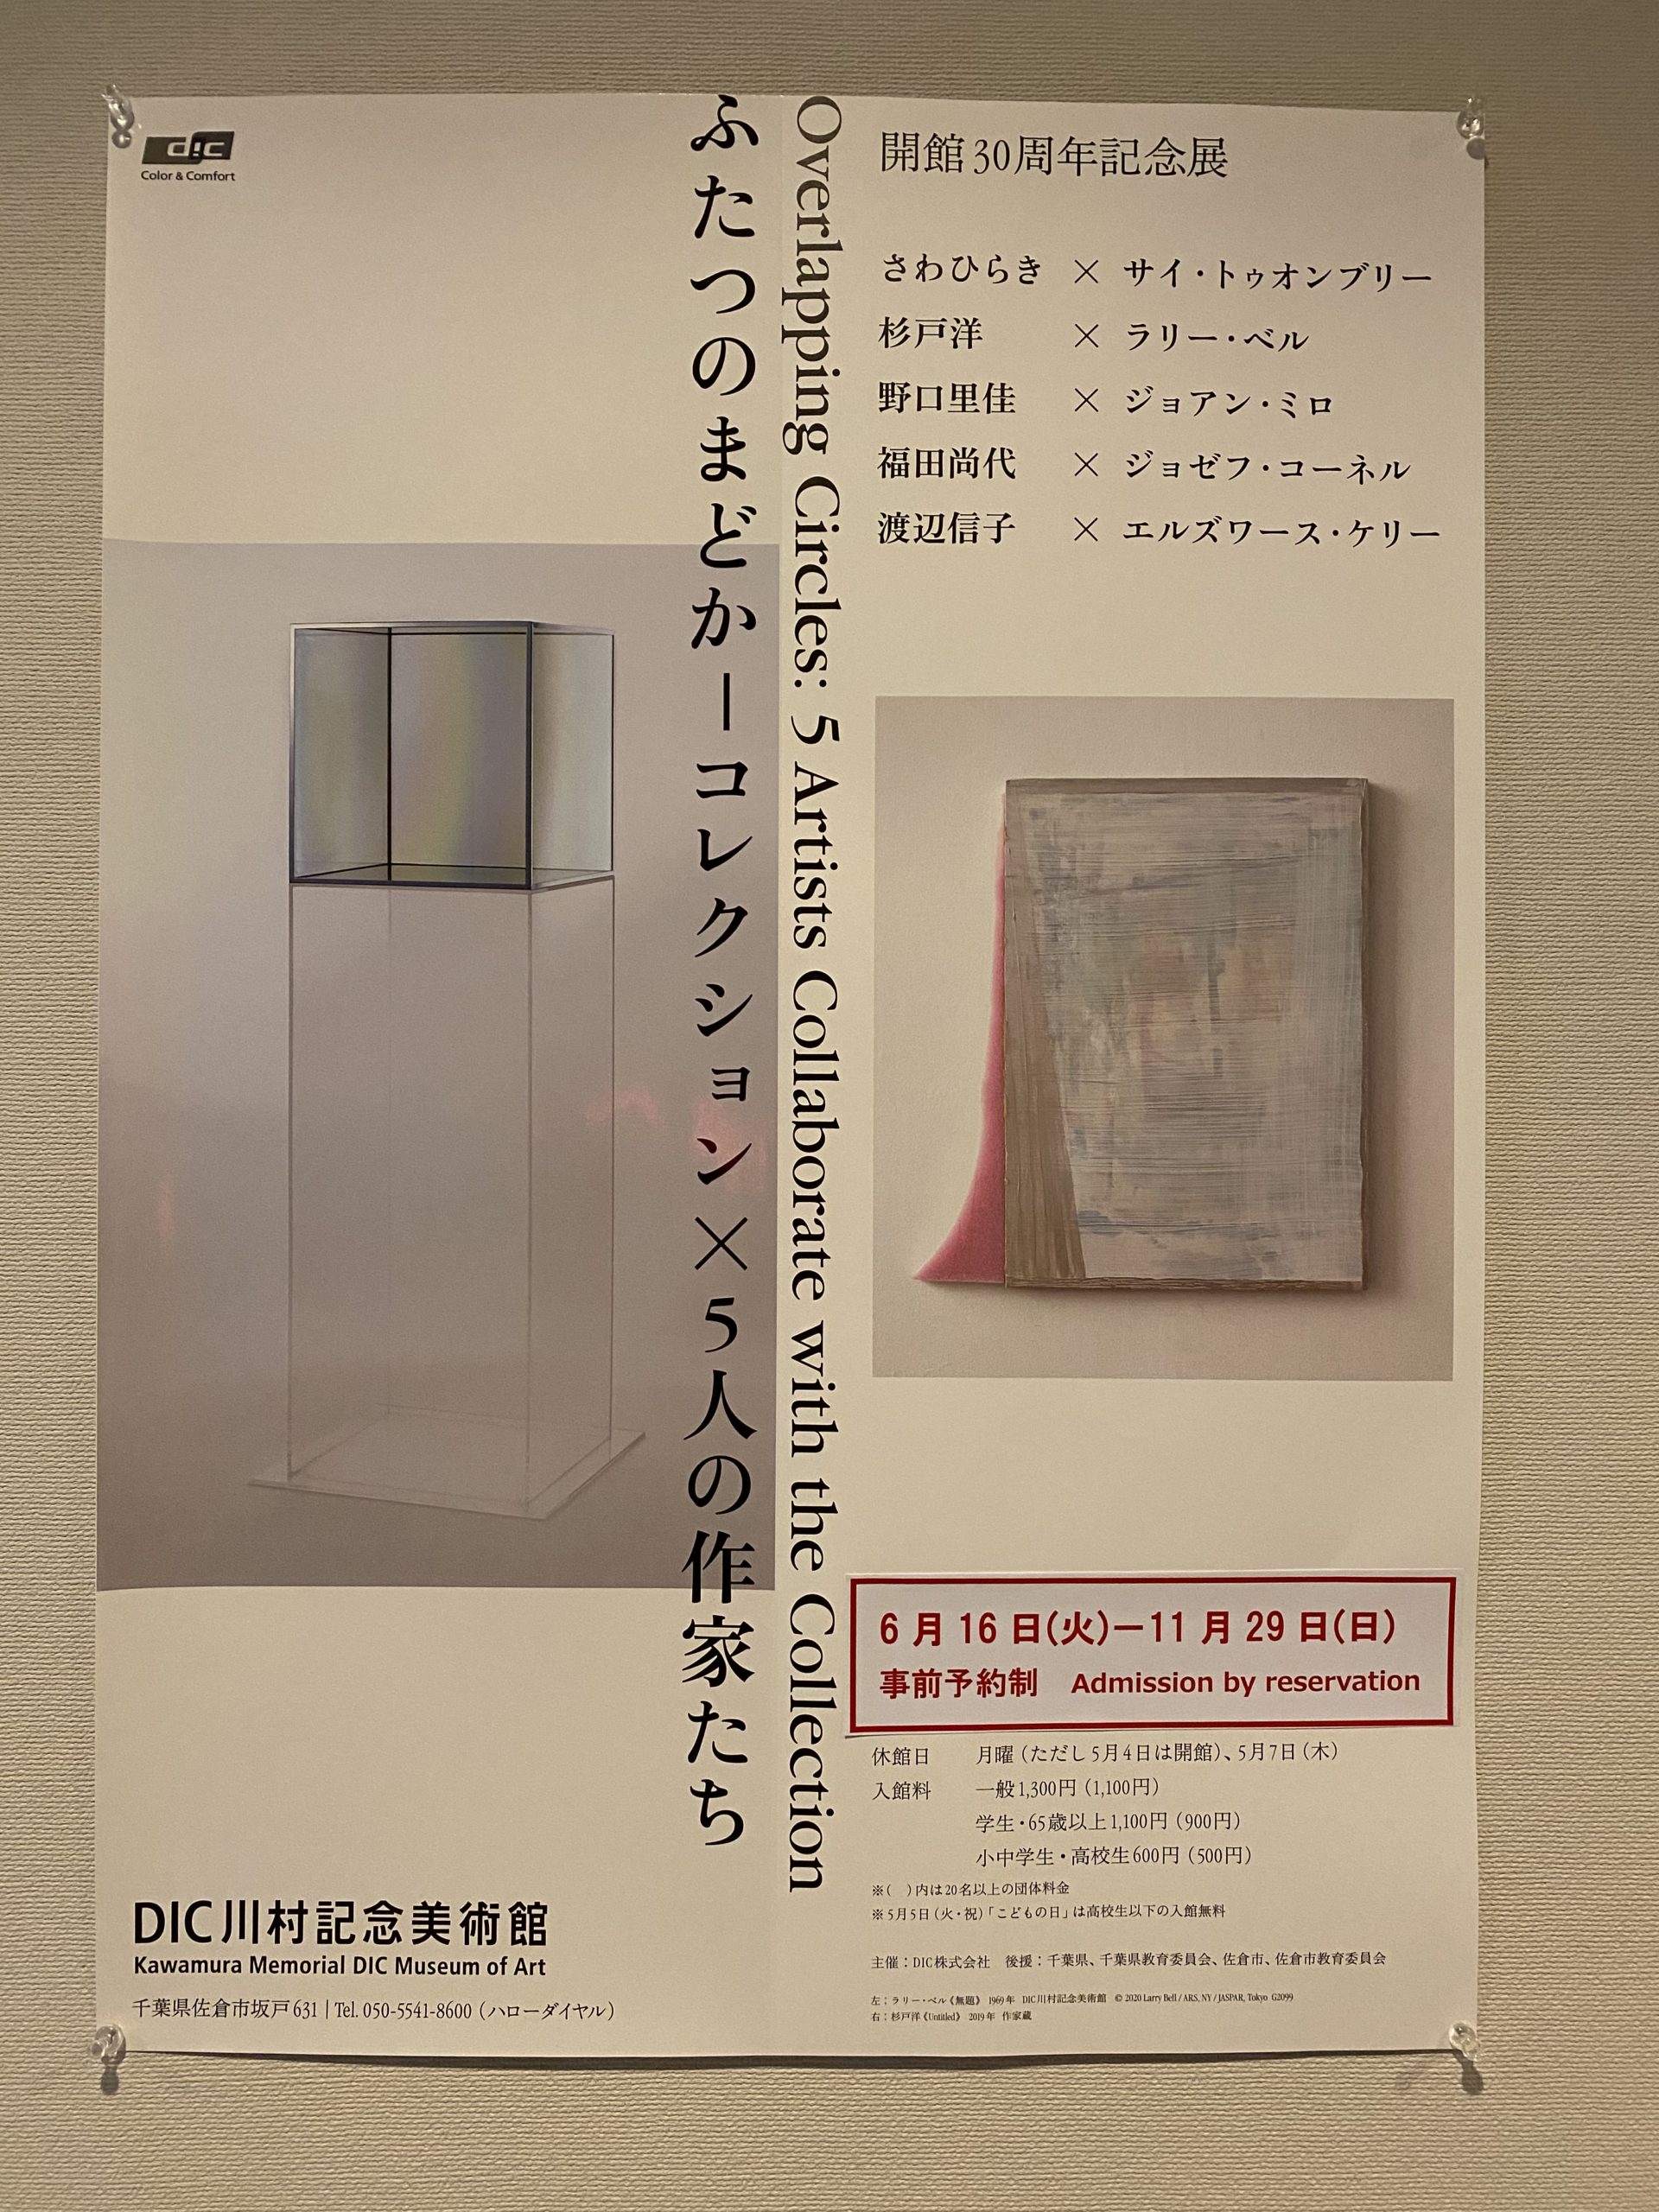 ふたつのまどかーコレクション×5人の作家」展＠DIC川村記念美術館